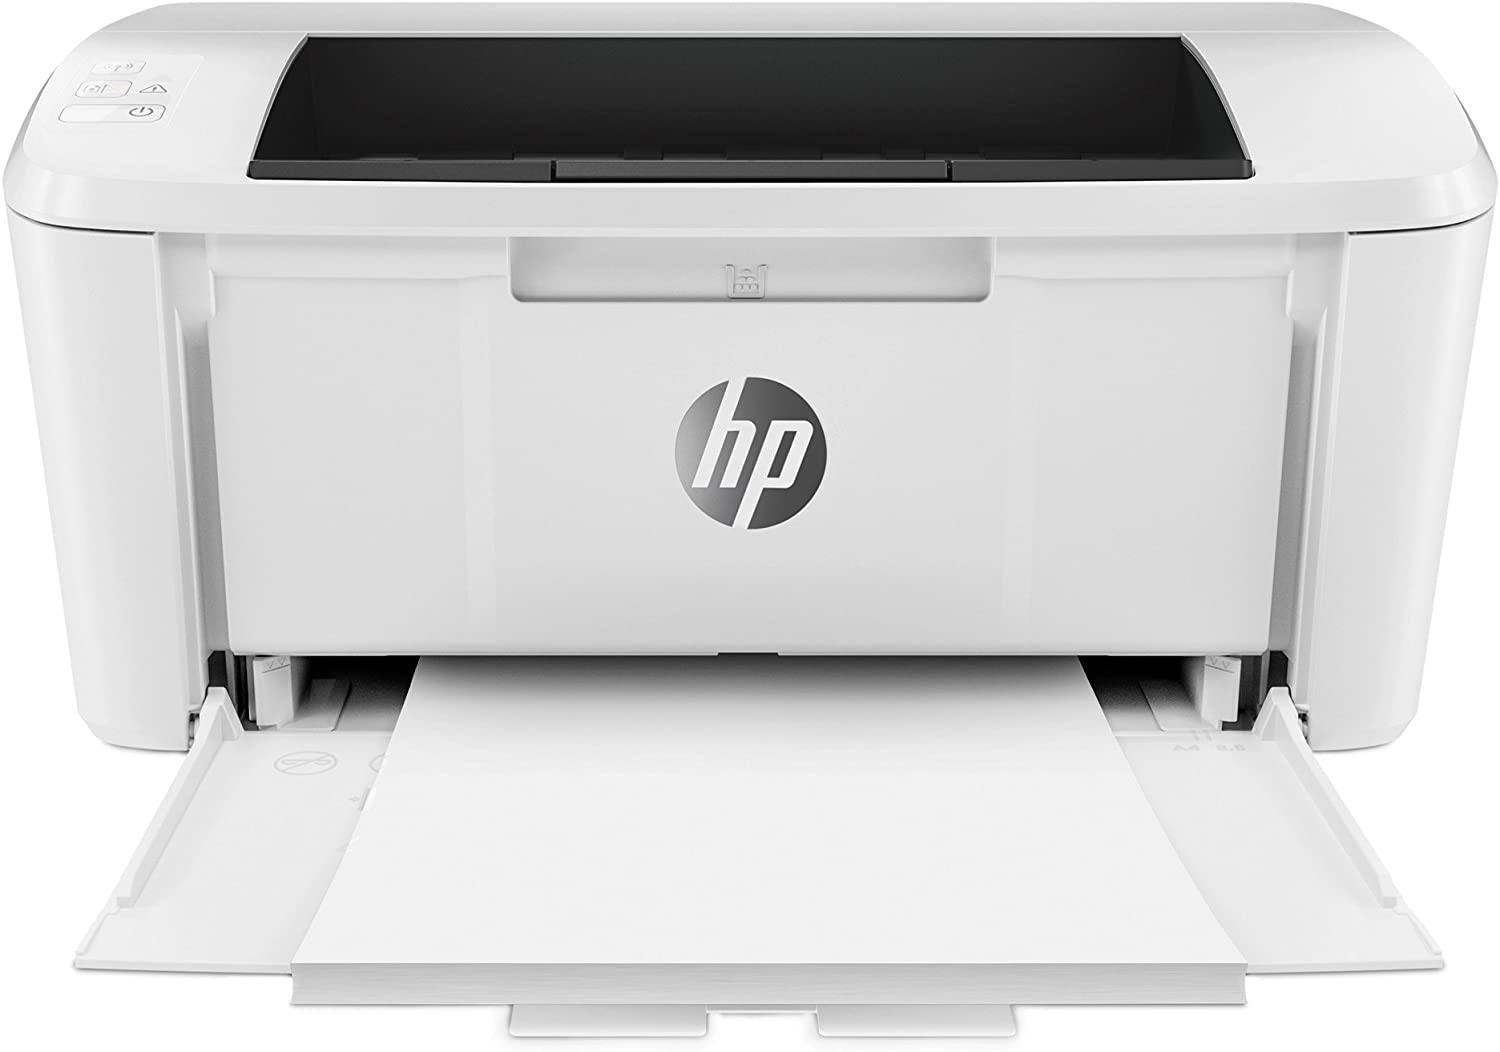 HP LaserJet Pro M15w